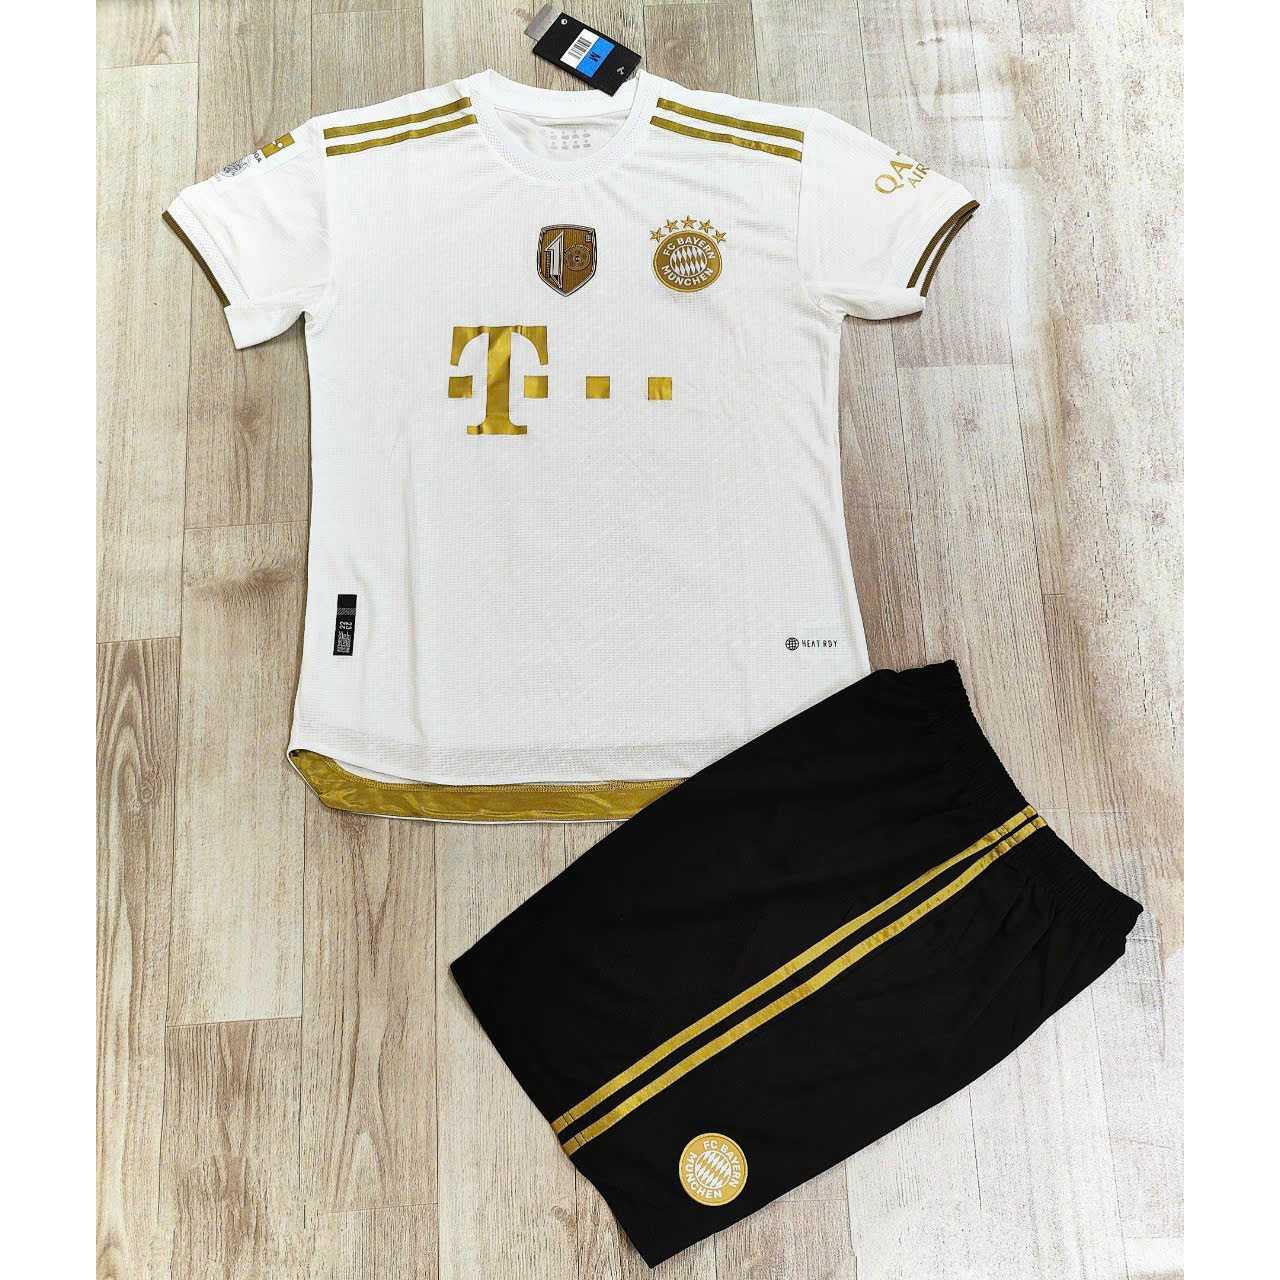 Bộ quần áo đá banh clb bóng đá bayern munich vải thái trắng hoạ tiết vàng logo thêu vải gai mịn thái 1